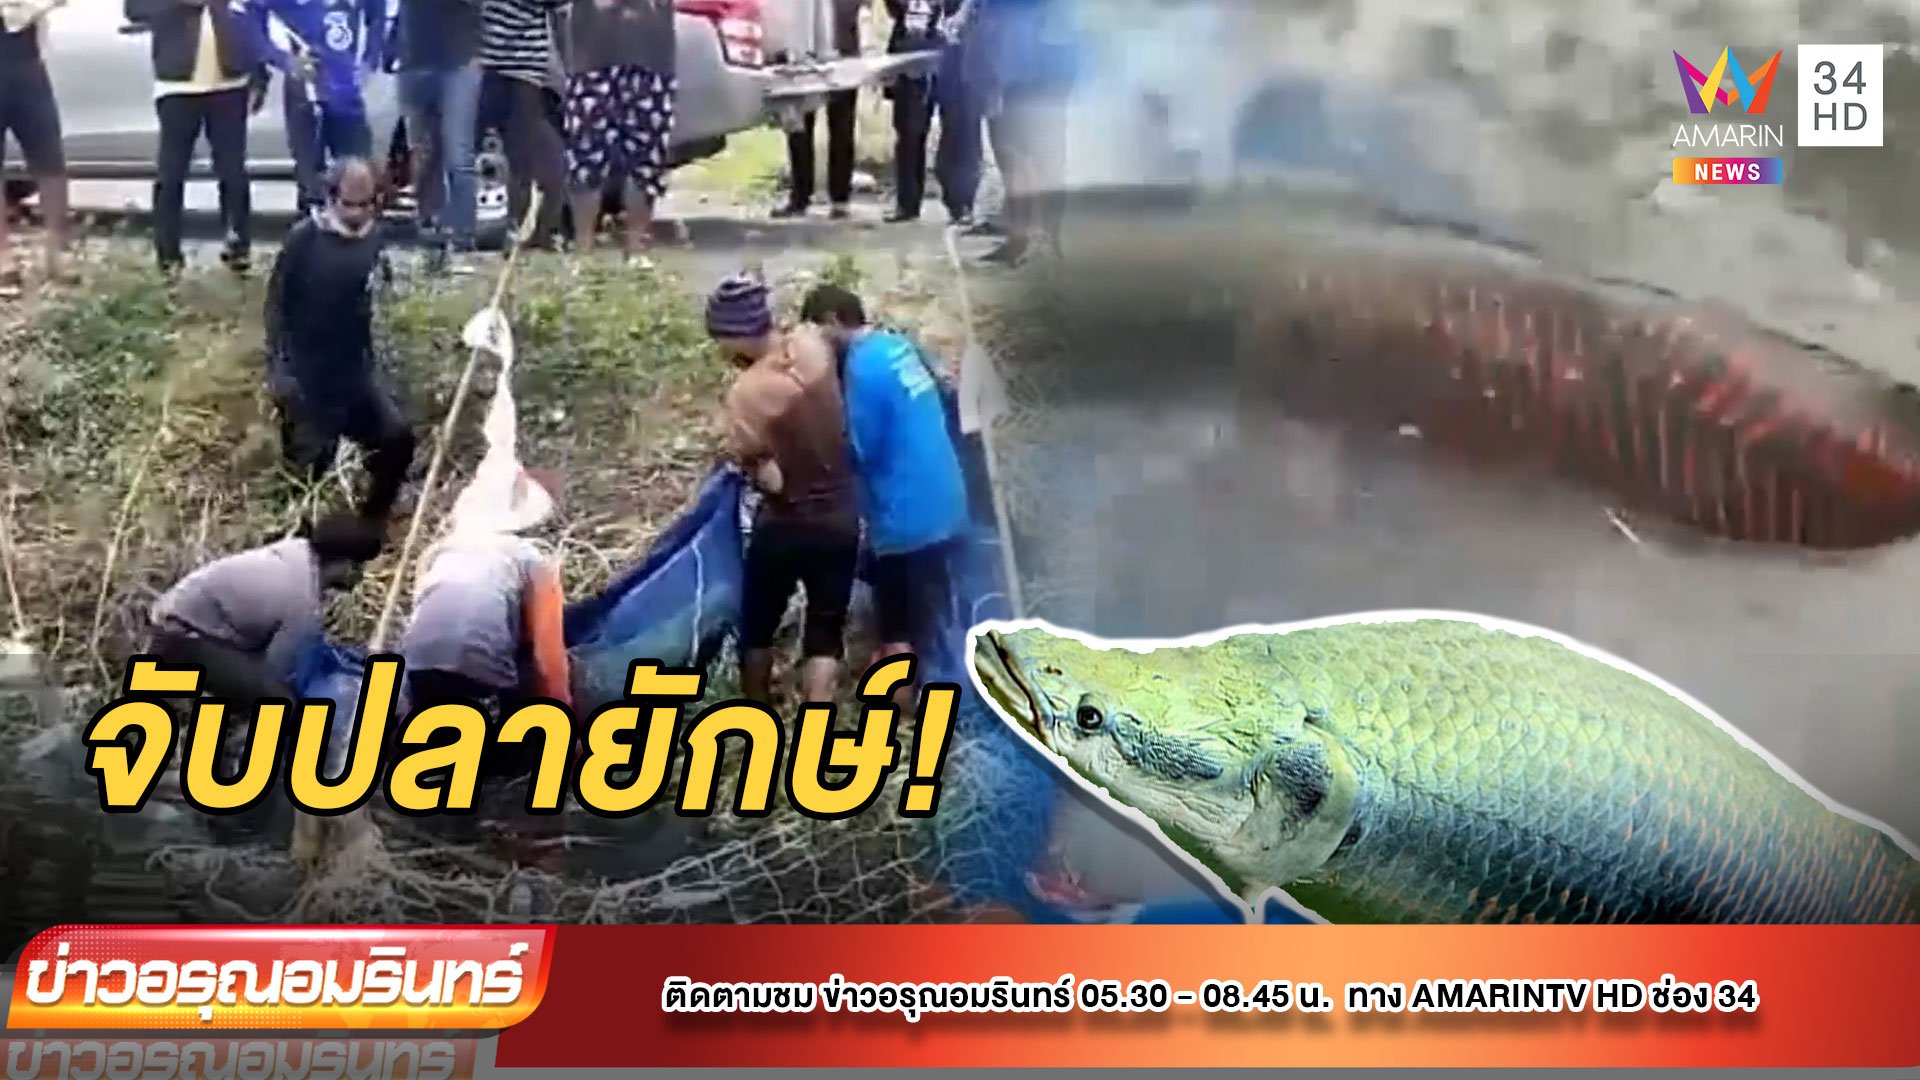 ตะลึง! ชาวบ้านแห่ล้อมจับ “ปลาช่อนอเมซอน” ตัวใหญ่เท่าคน | ข่าวอรุณอมรินทร์ | 16 พ.ย. 64 | AMARIN TVHD34